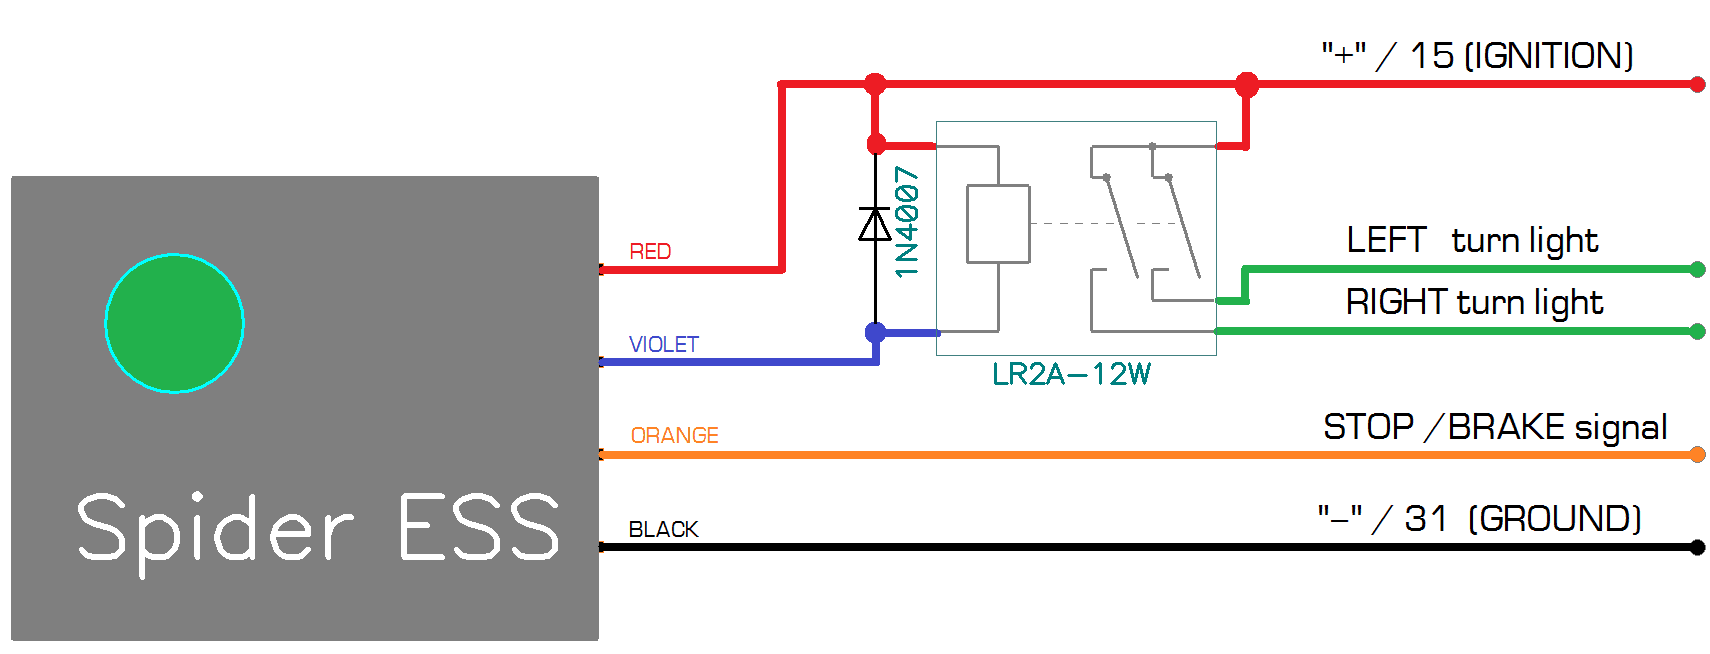 Схема подключения датчика экстренного торможения Spider ESS к проводке автомобиля